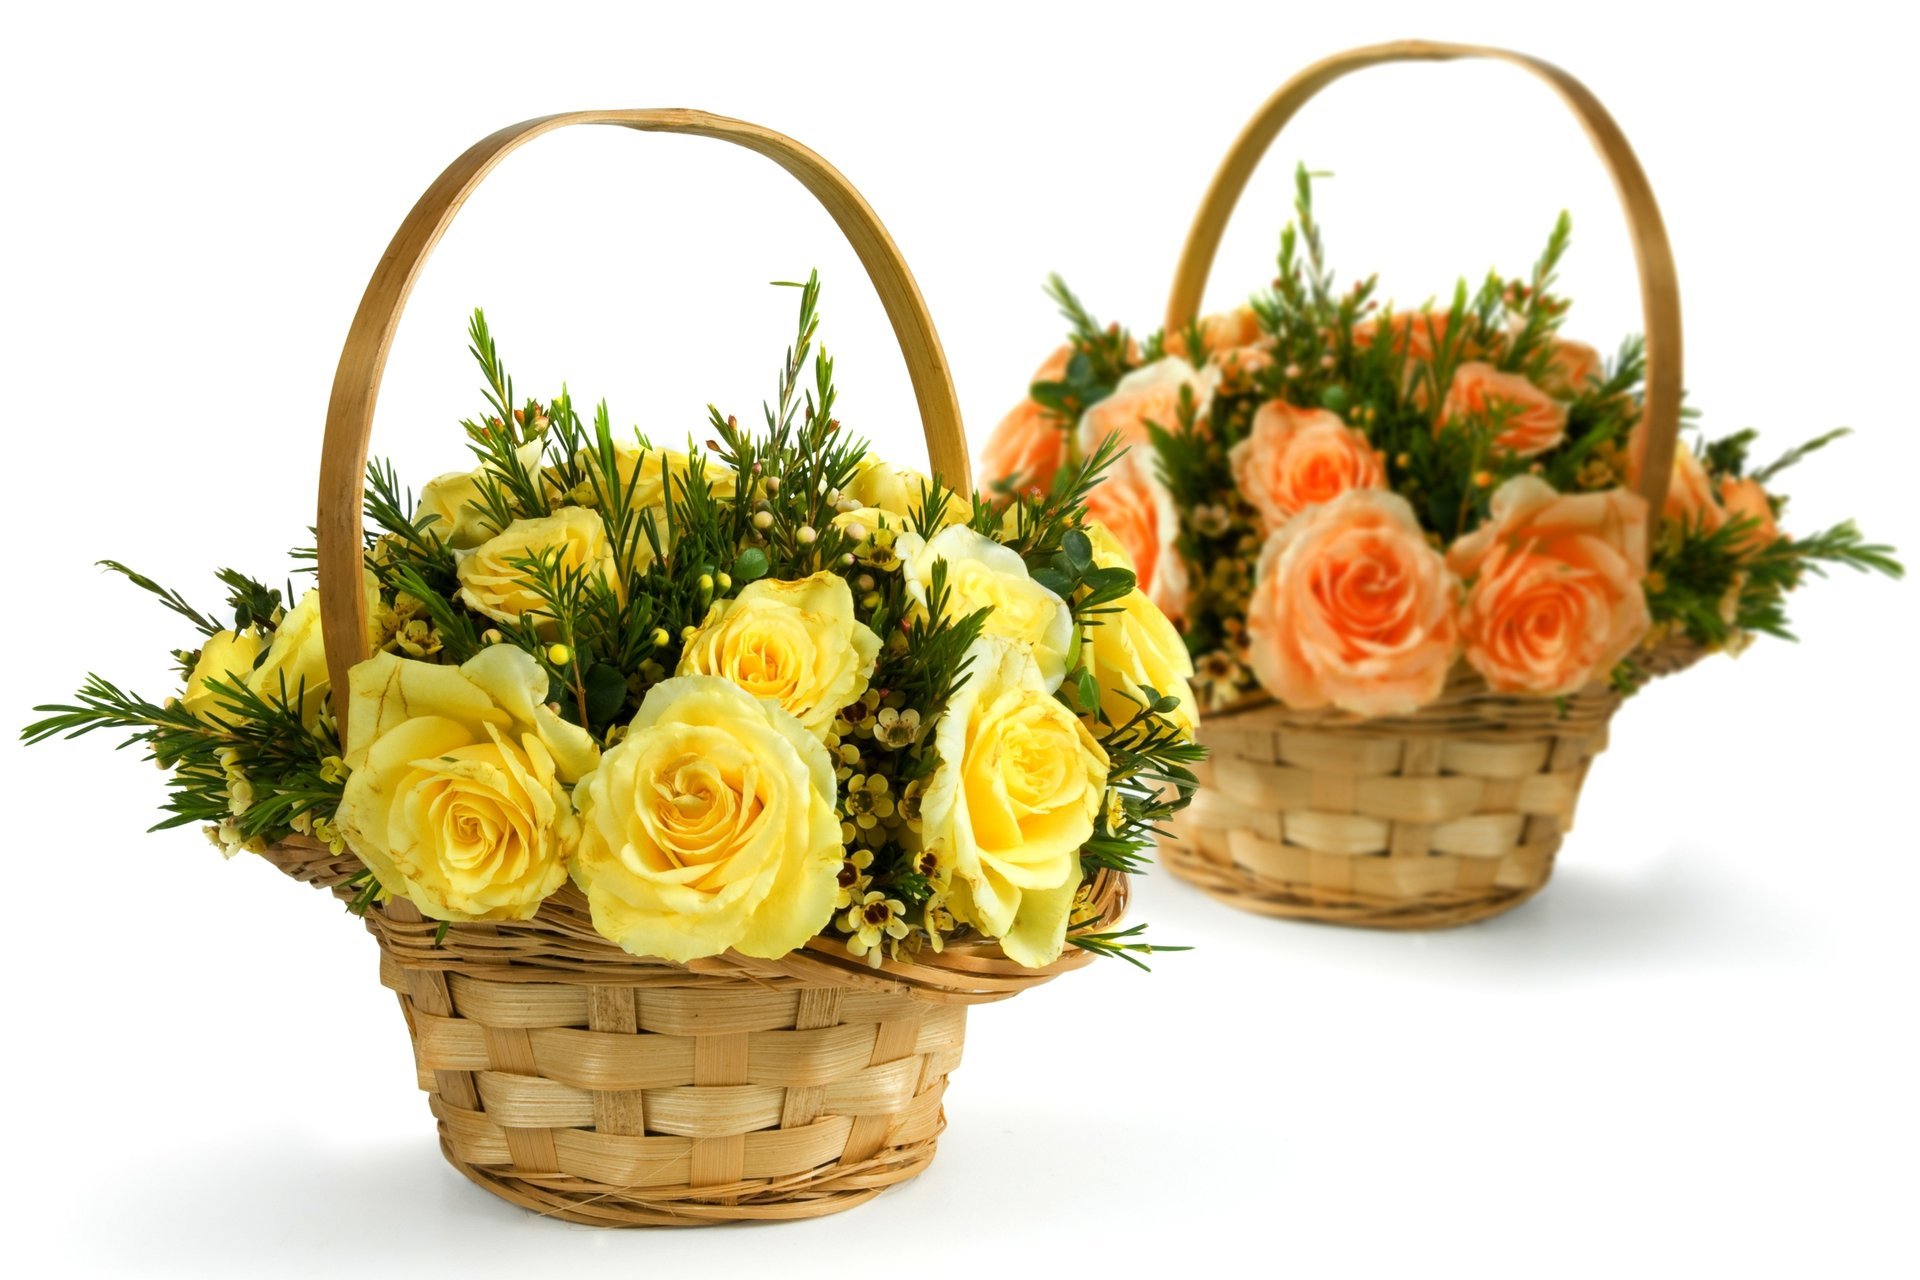 Cute bouquets of roses in wicker baskets